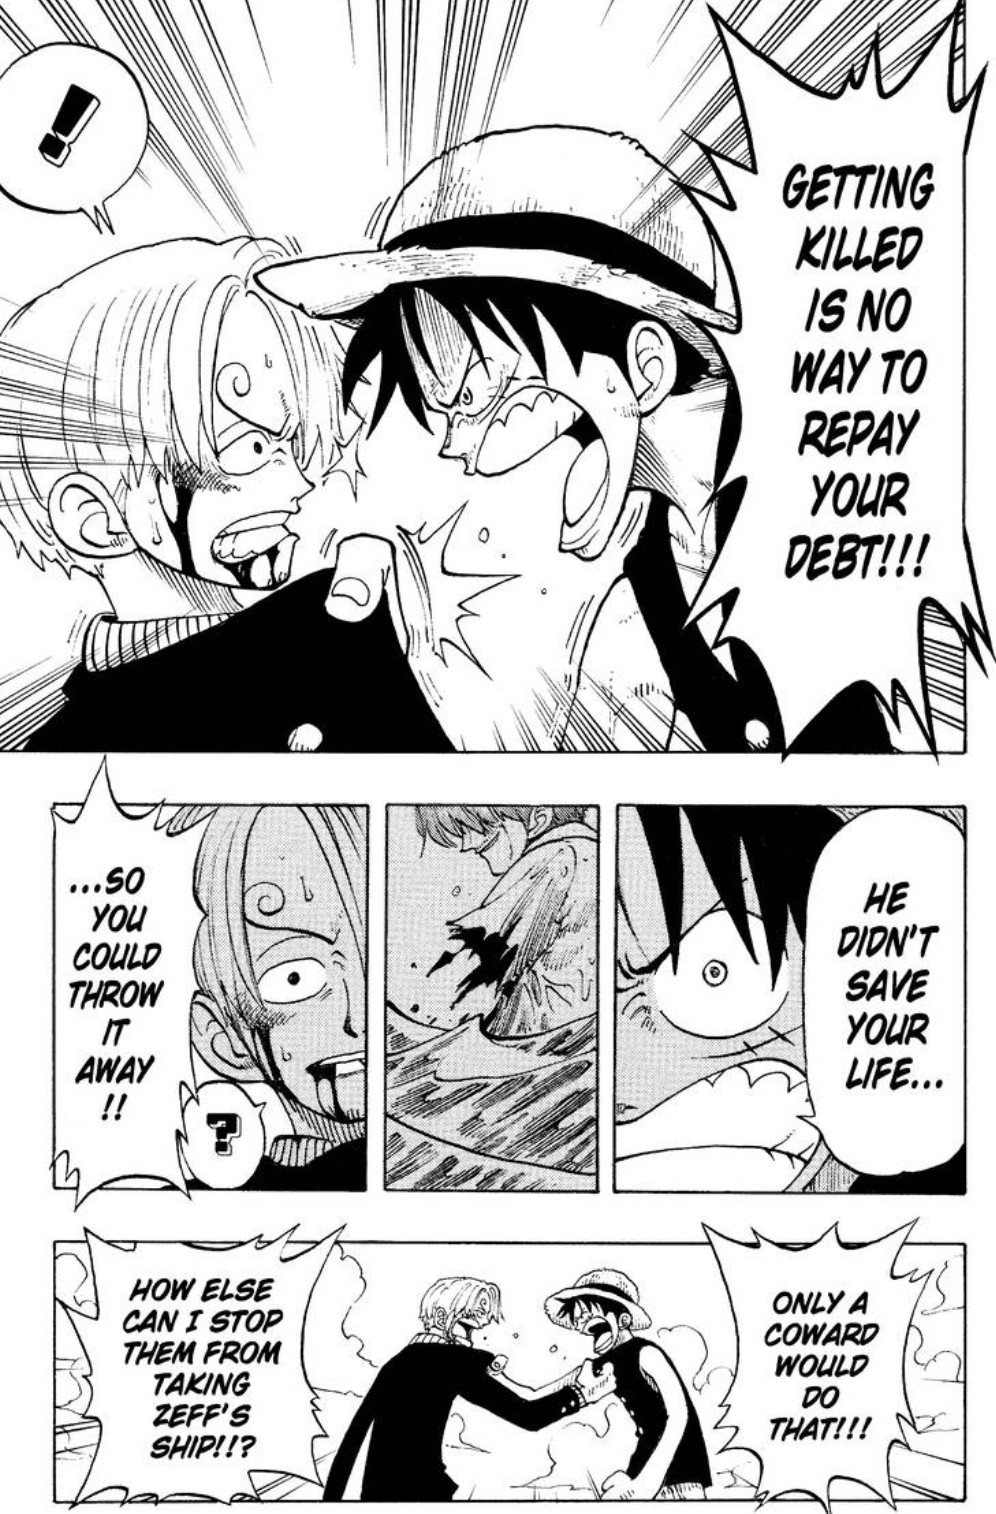 En panel av One Piece manga.  Luffy håller Sanji i tröjan och ropar: Att bli dödad är inget sätt att betala tillbaka din skuld!  Han räddade inte ditt liv så du kunde slänga det!!  Bara en feg skulle göra det!!!  Sanji svarar: Hur kan jag annars hindra dem från att ta Zeffs skepp!!?